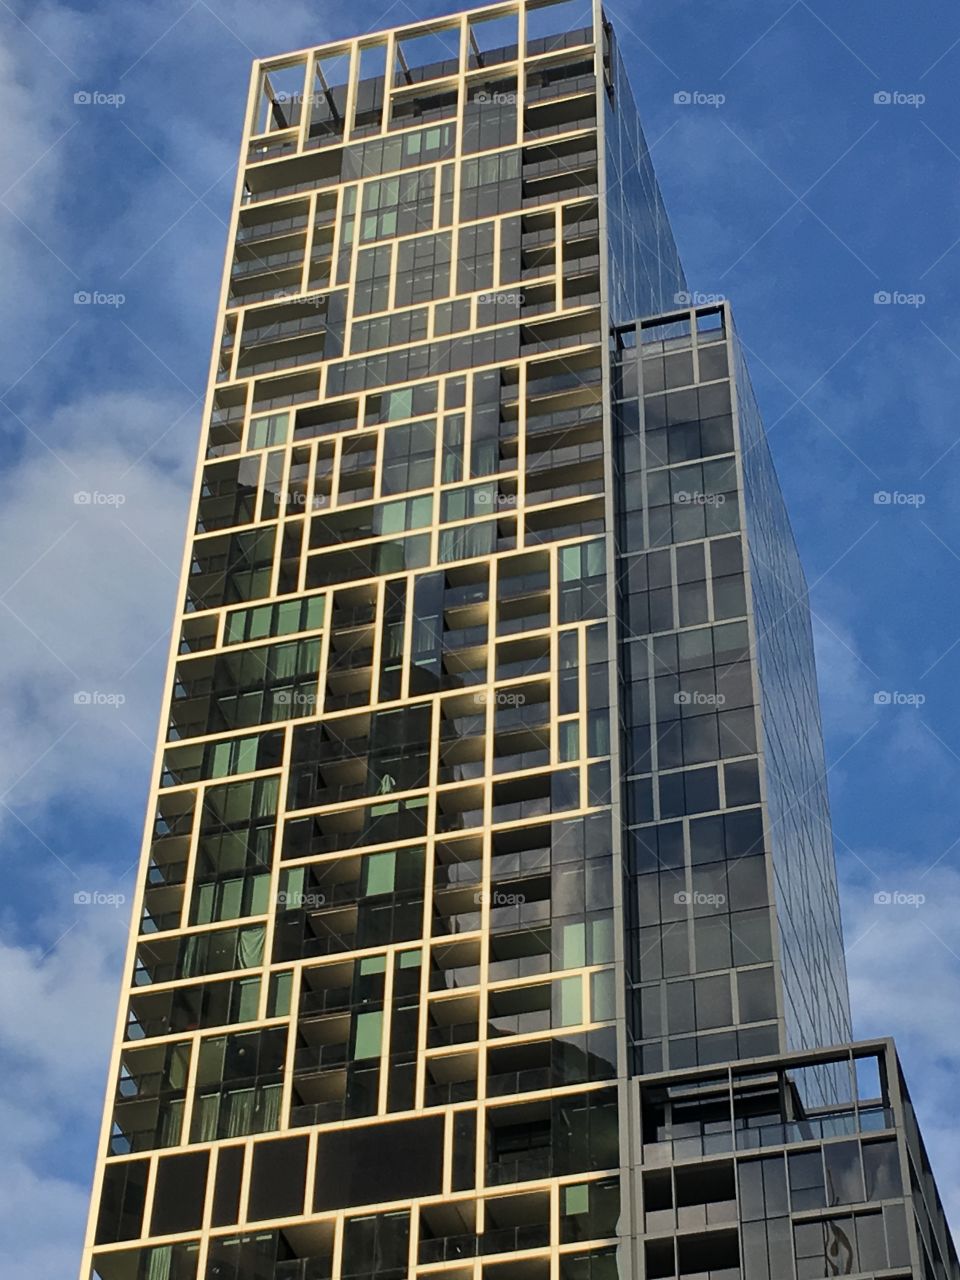 Melbourne buildings